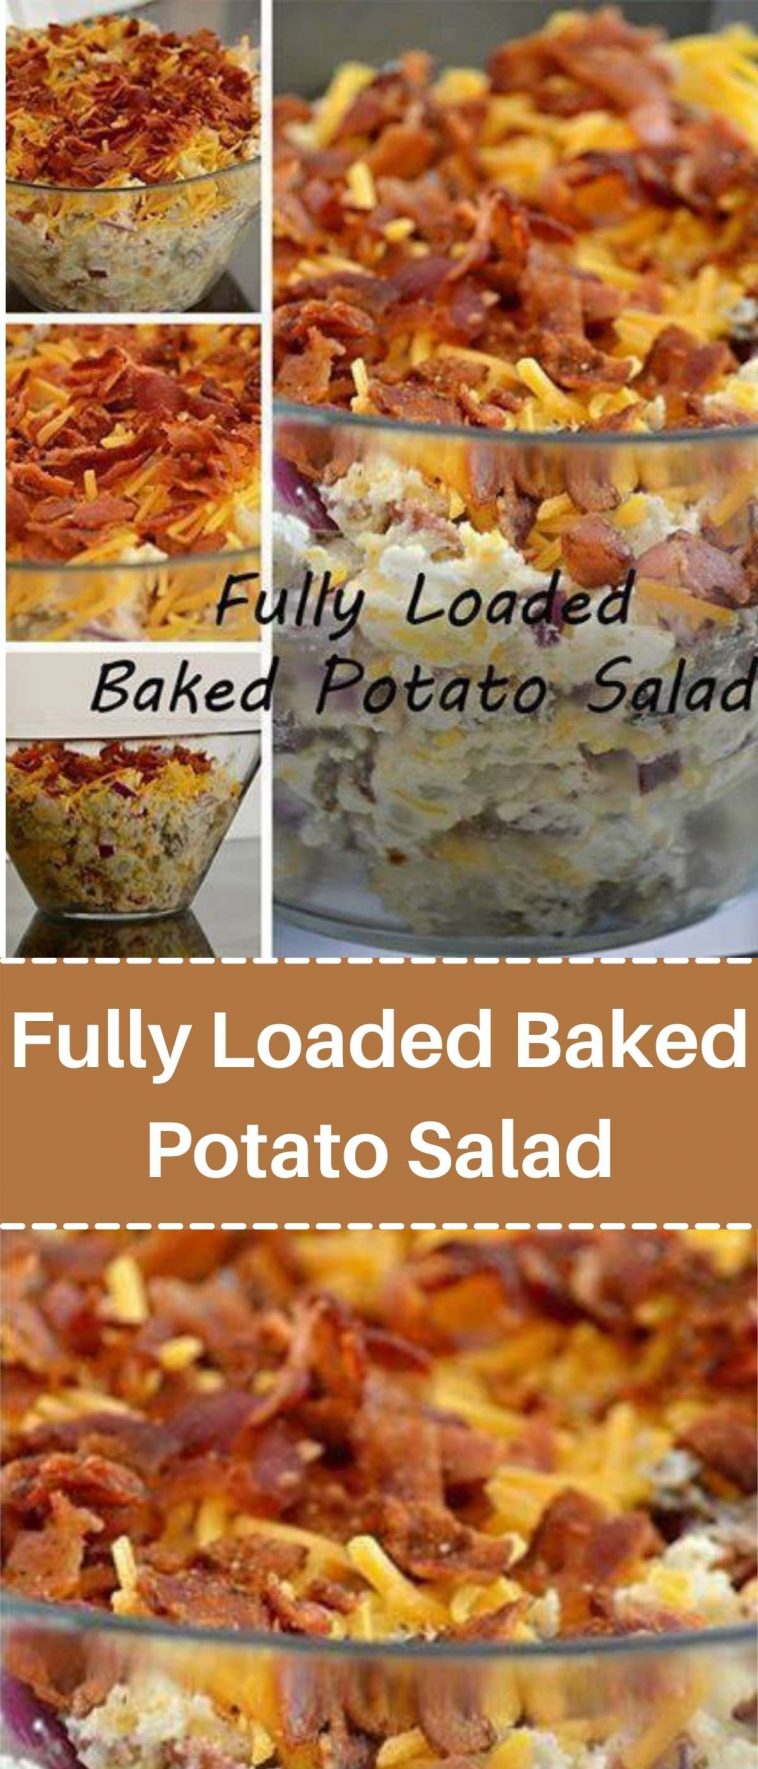 Fully Loaded Baked Potato Salad